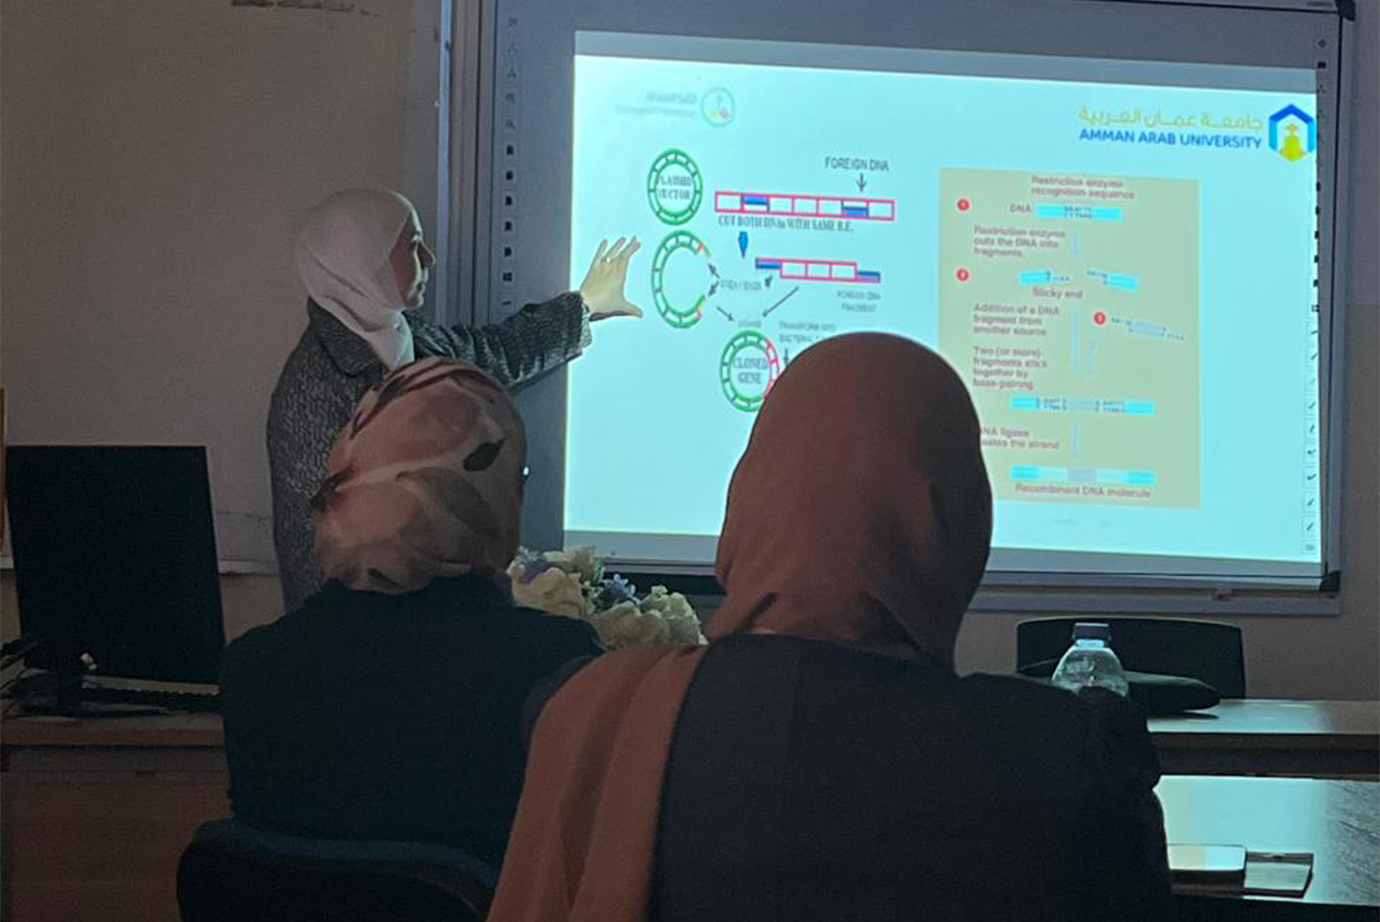 ورشة علمية لطلبة صيدلة عمان العربية بعنوان "الهندسة الوراثية"2